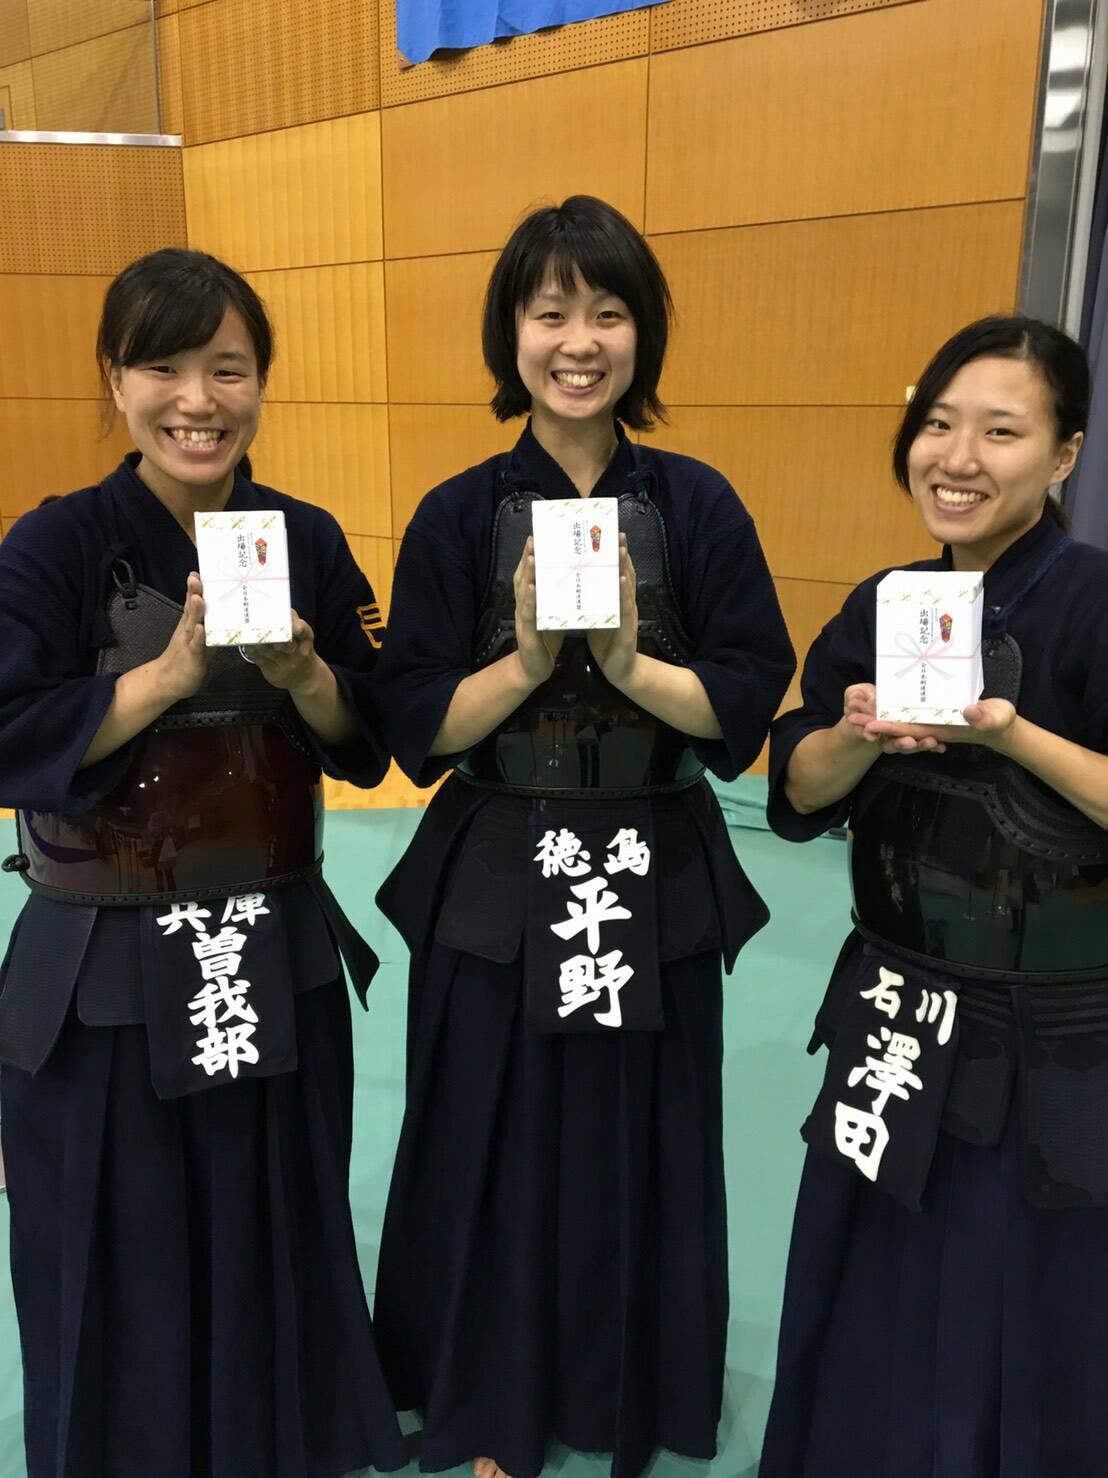 全日本女子剣道選手権大会の結果 大阪体育大学剣道部